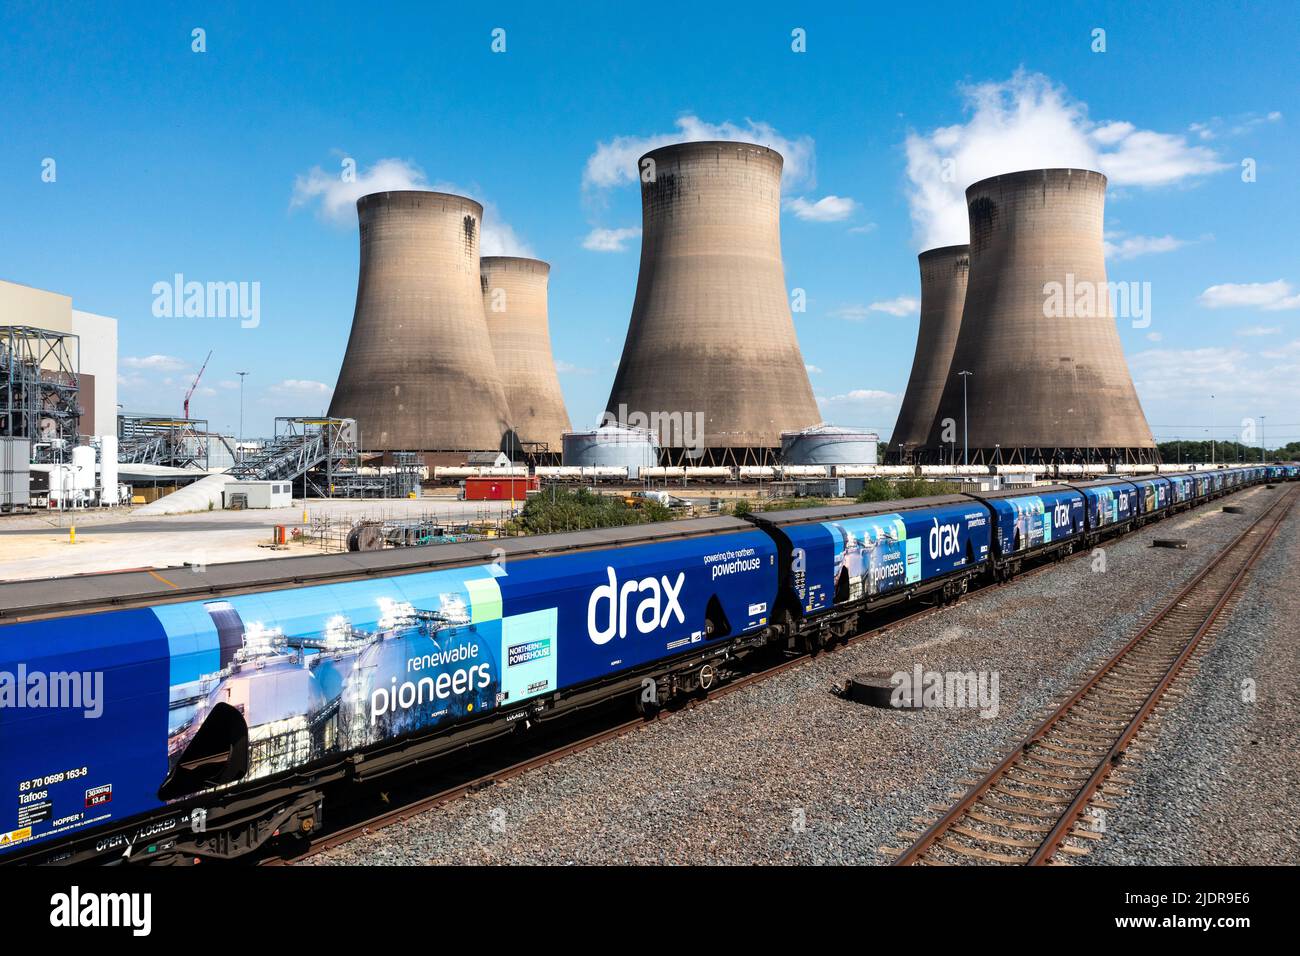 Vue aérienne d'un train de marchandises et de wagons qui fournissent du combustible à biomasse renouvelable au lieu du charbon à la centrale électrique de Drax afin de réduire l'empreinte carbone Banque D'Images